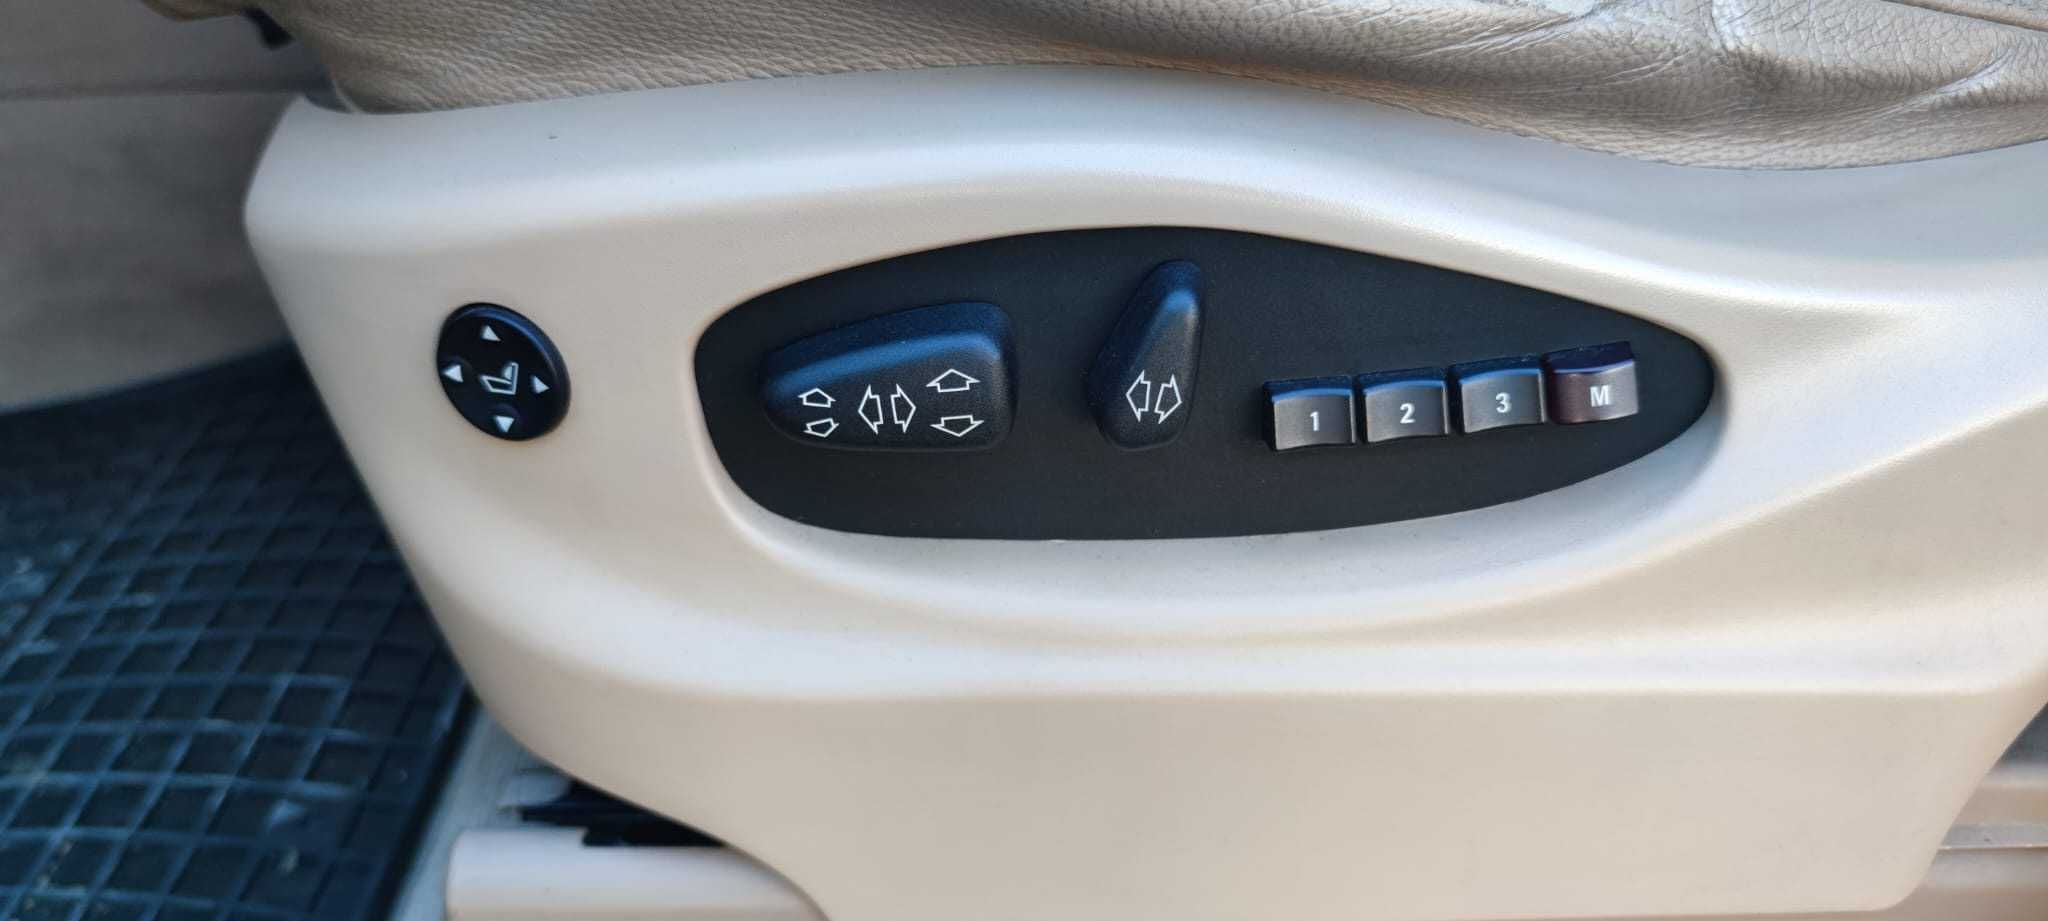 BMW X5 E53 N1 - Autoutilitara